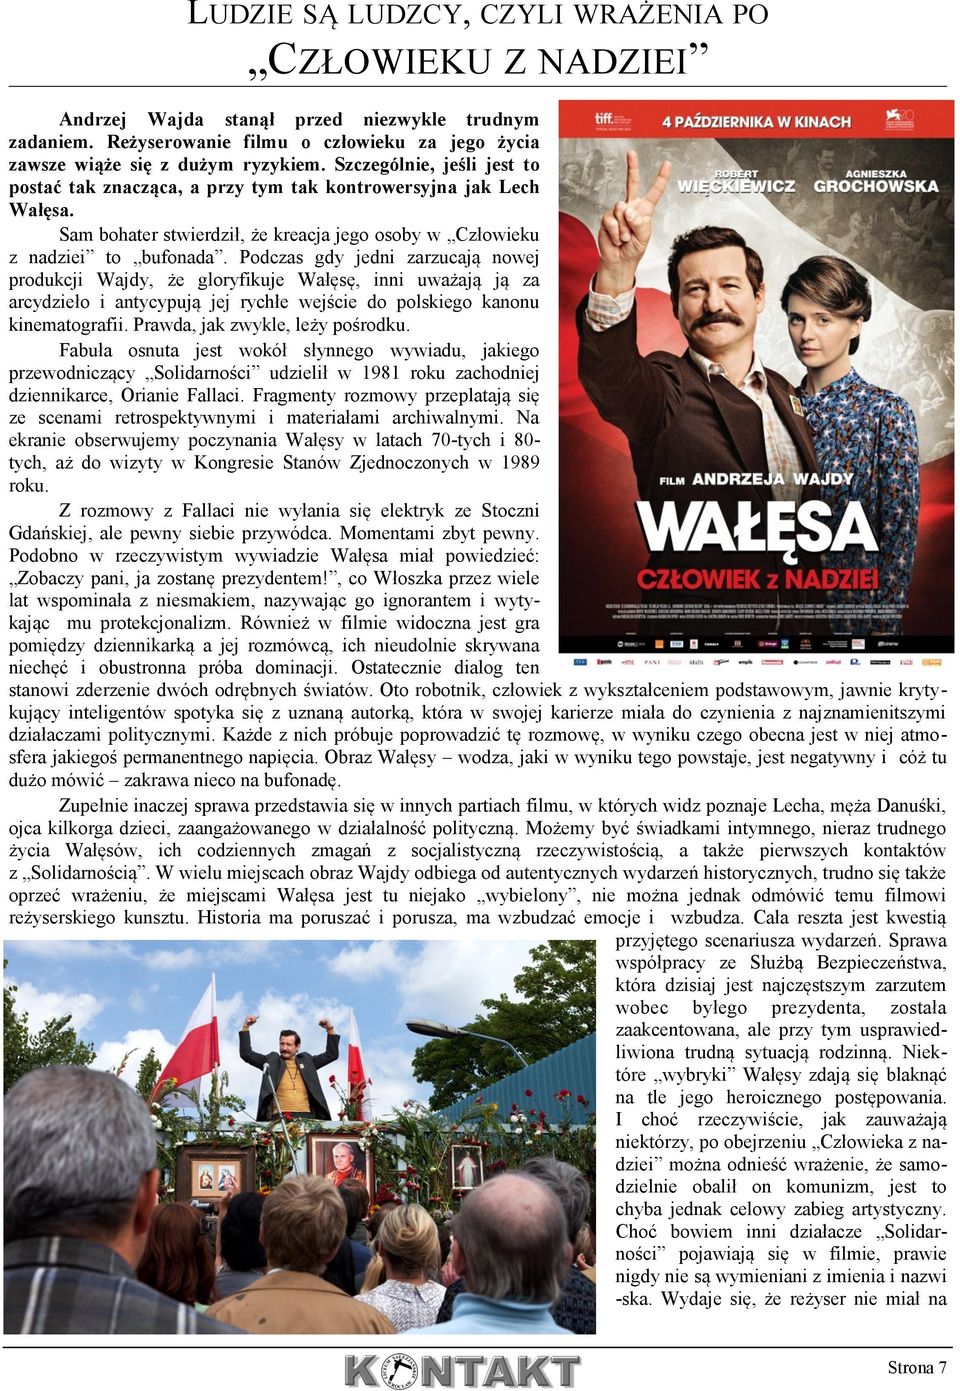 Podczas gdy jedni zarzucają nowej produkcji Wajdy, że gloryfikuje Wałęsę, inni uważają ją za arcydzieło i antycypują jej rychłe wejście do polskiego kanonu kinematografii.